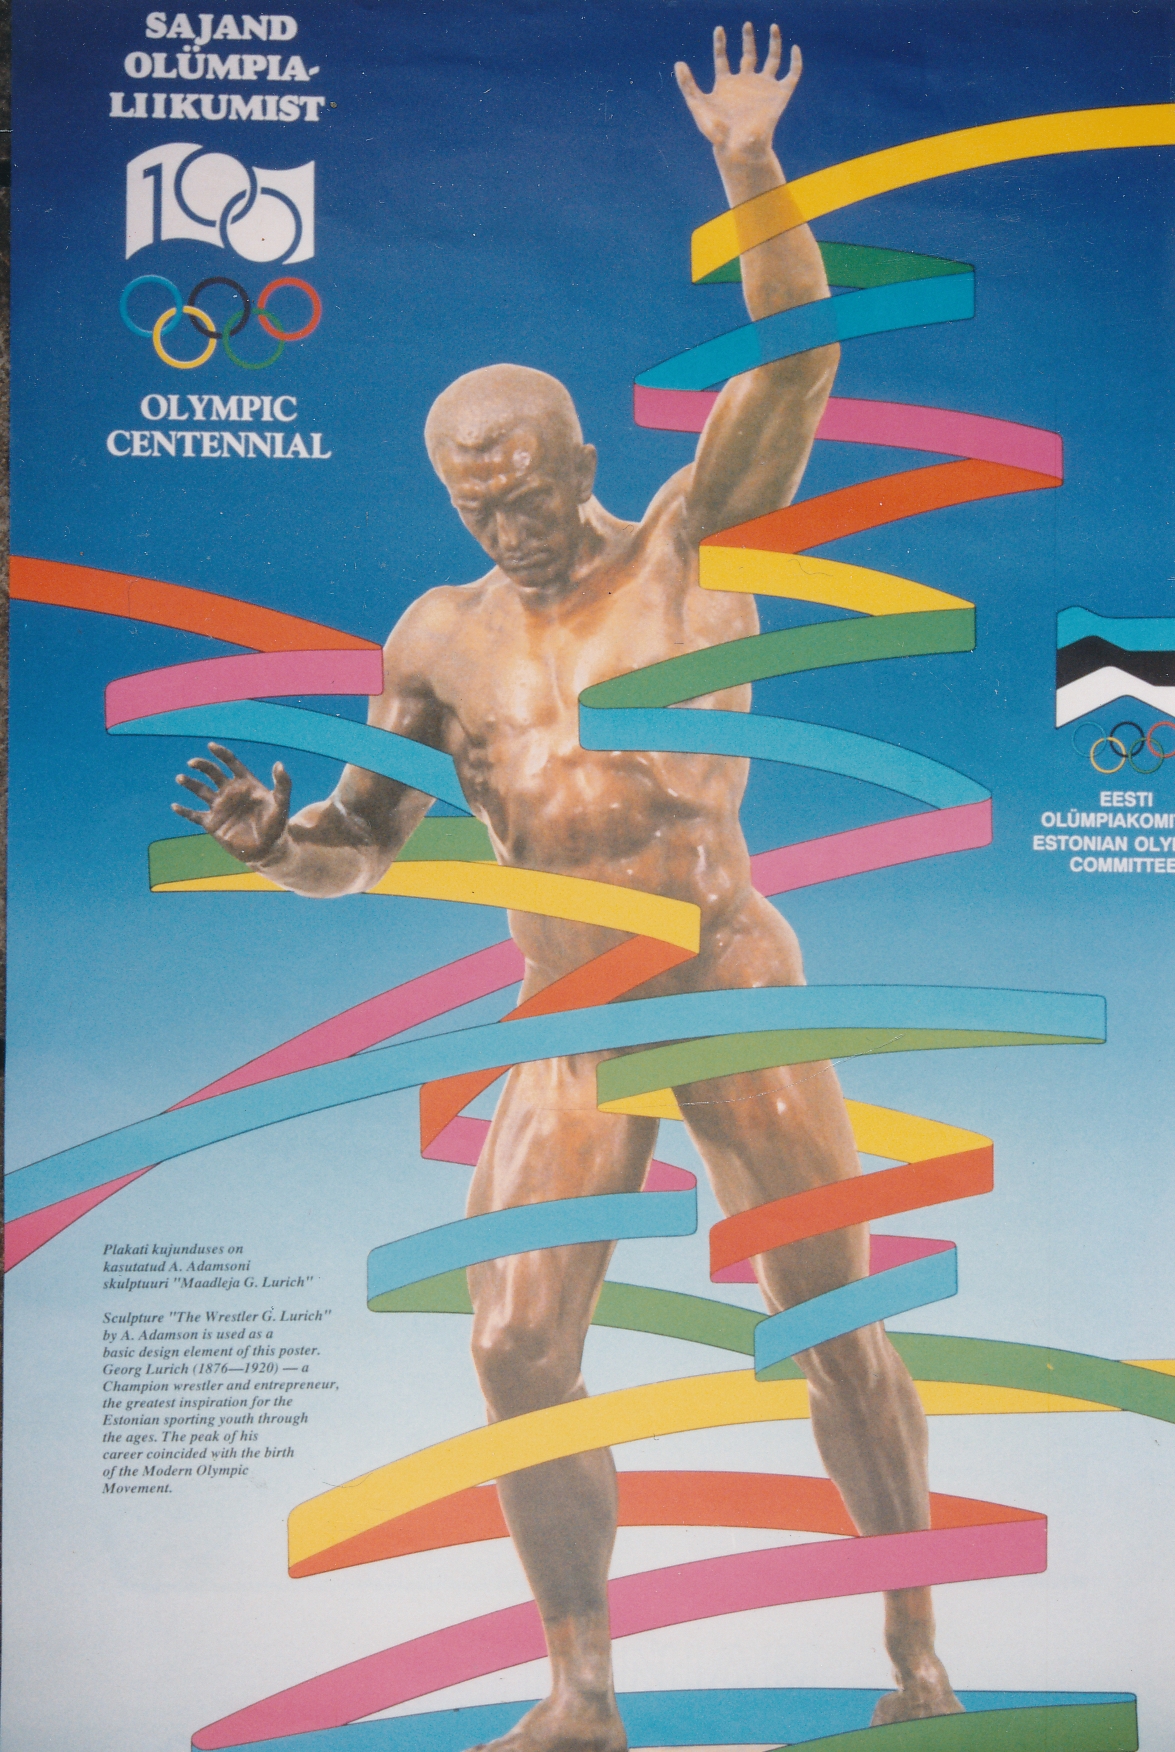 Plakat Sajand olümpialiikumist